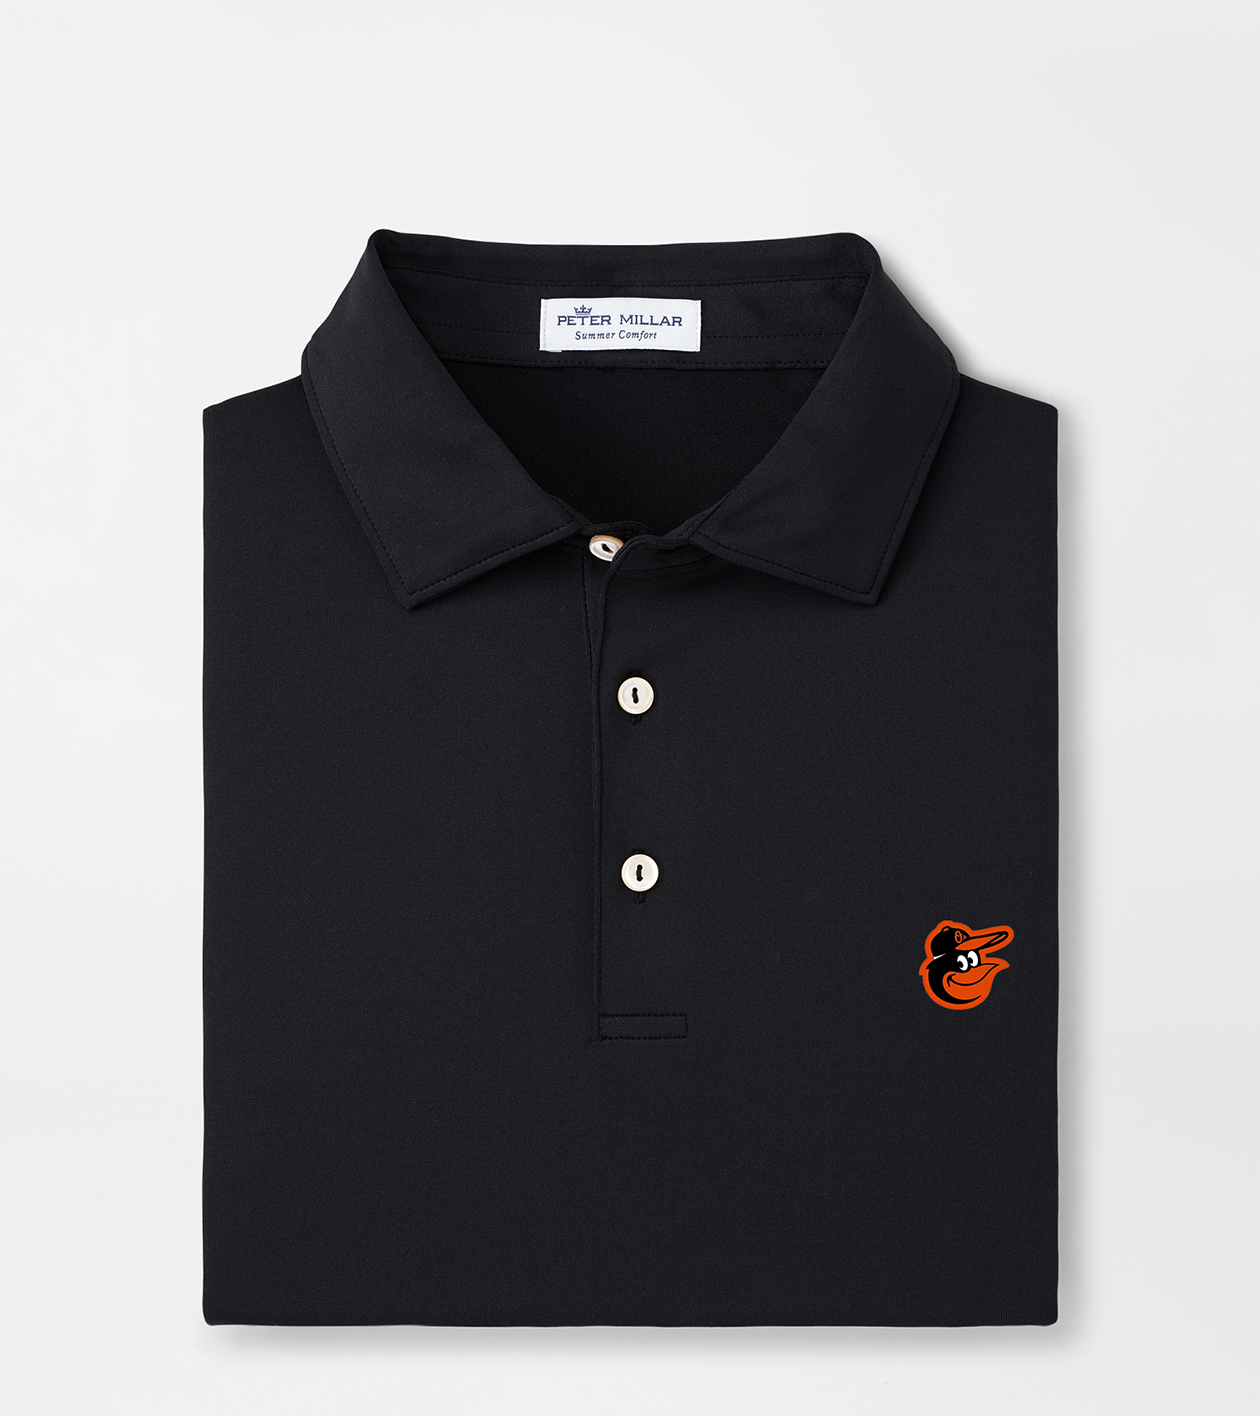 Baltimore Orioles Polos, Golf Shirt, Orioles Polo Shirts